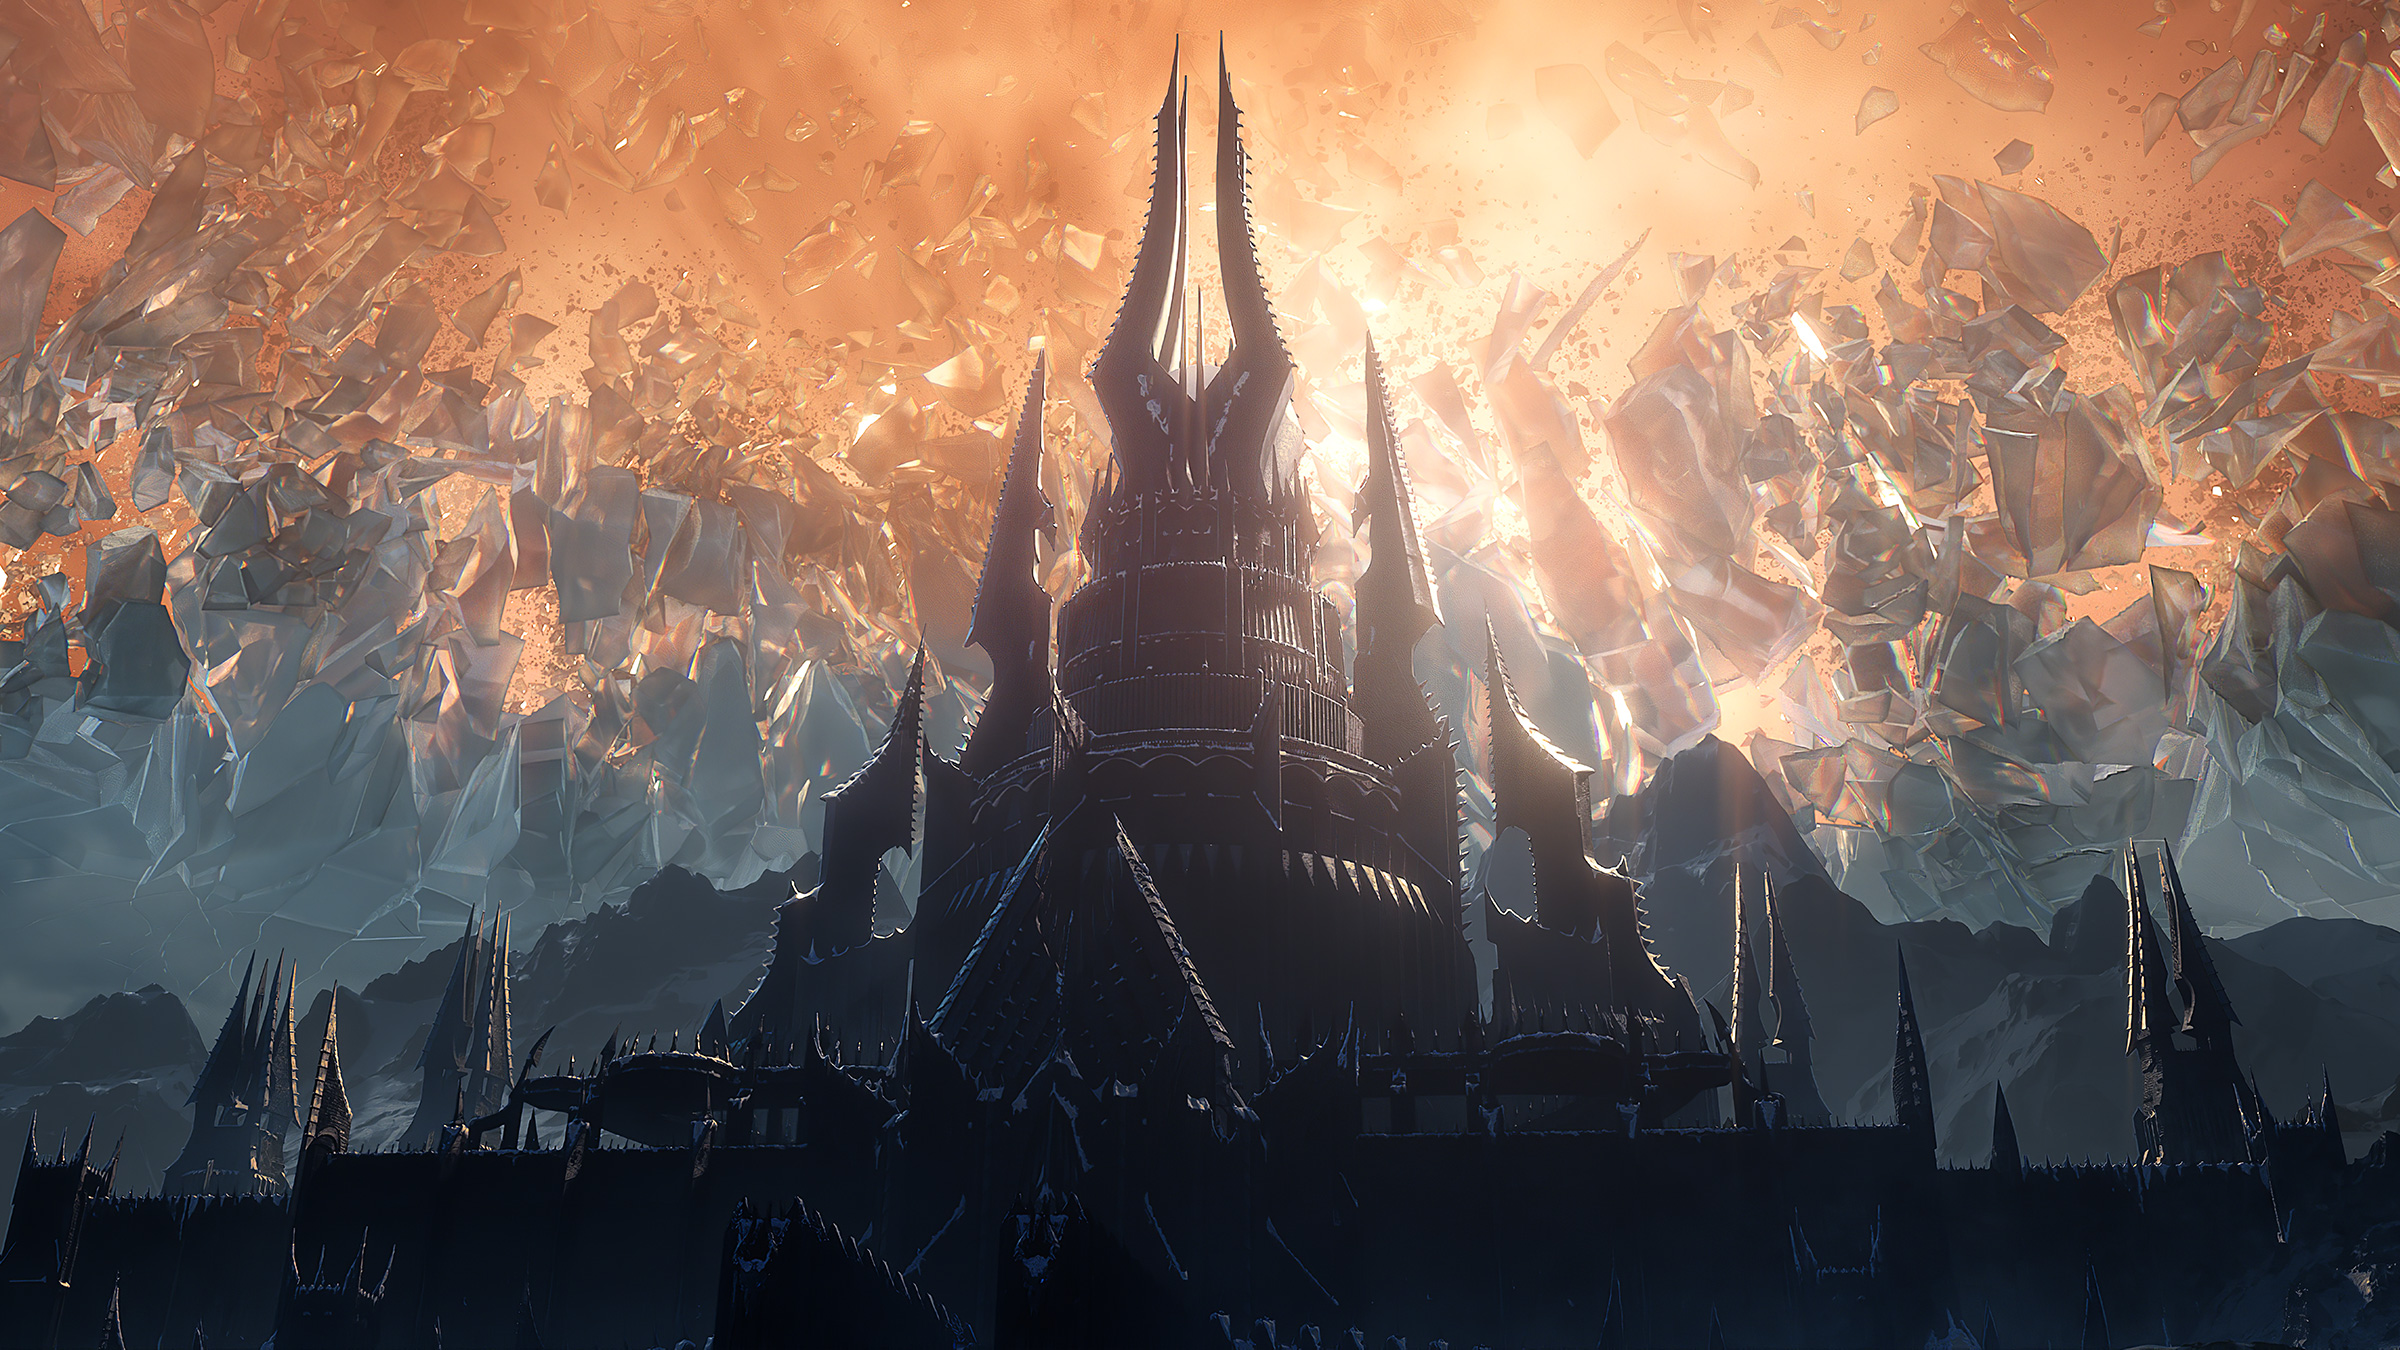 Mundo de Warcraft Tierras Sombrías 10 02 20 1